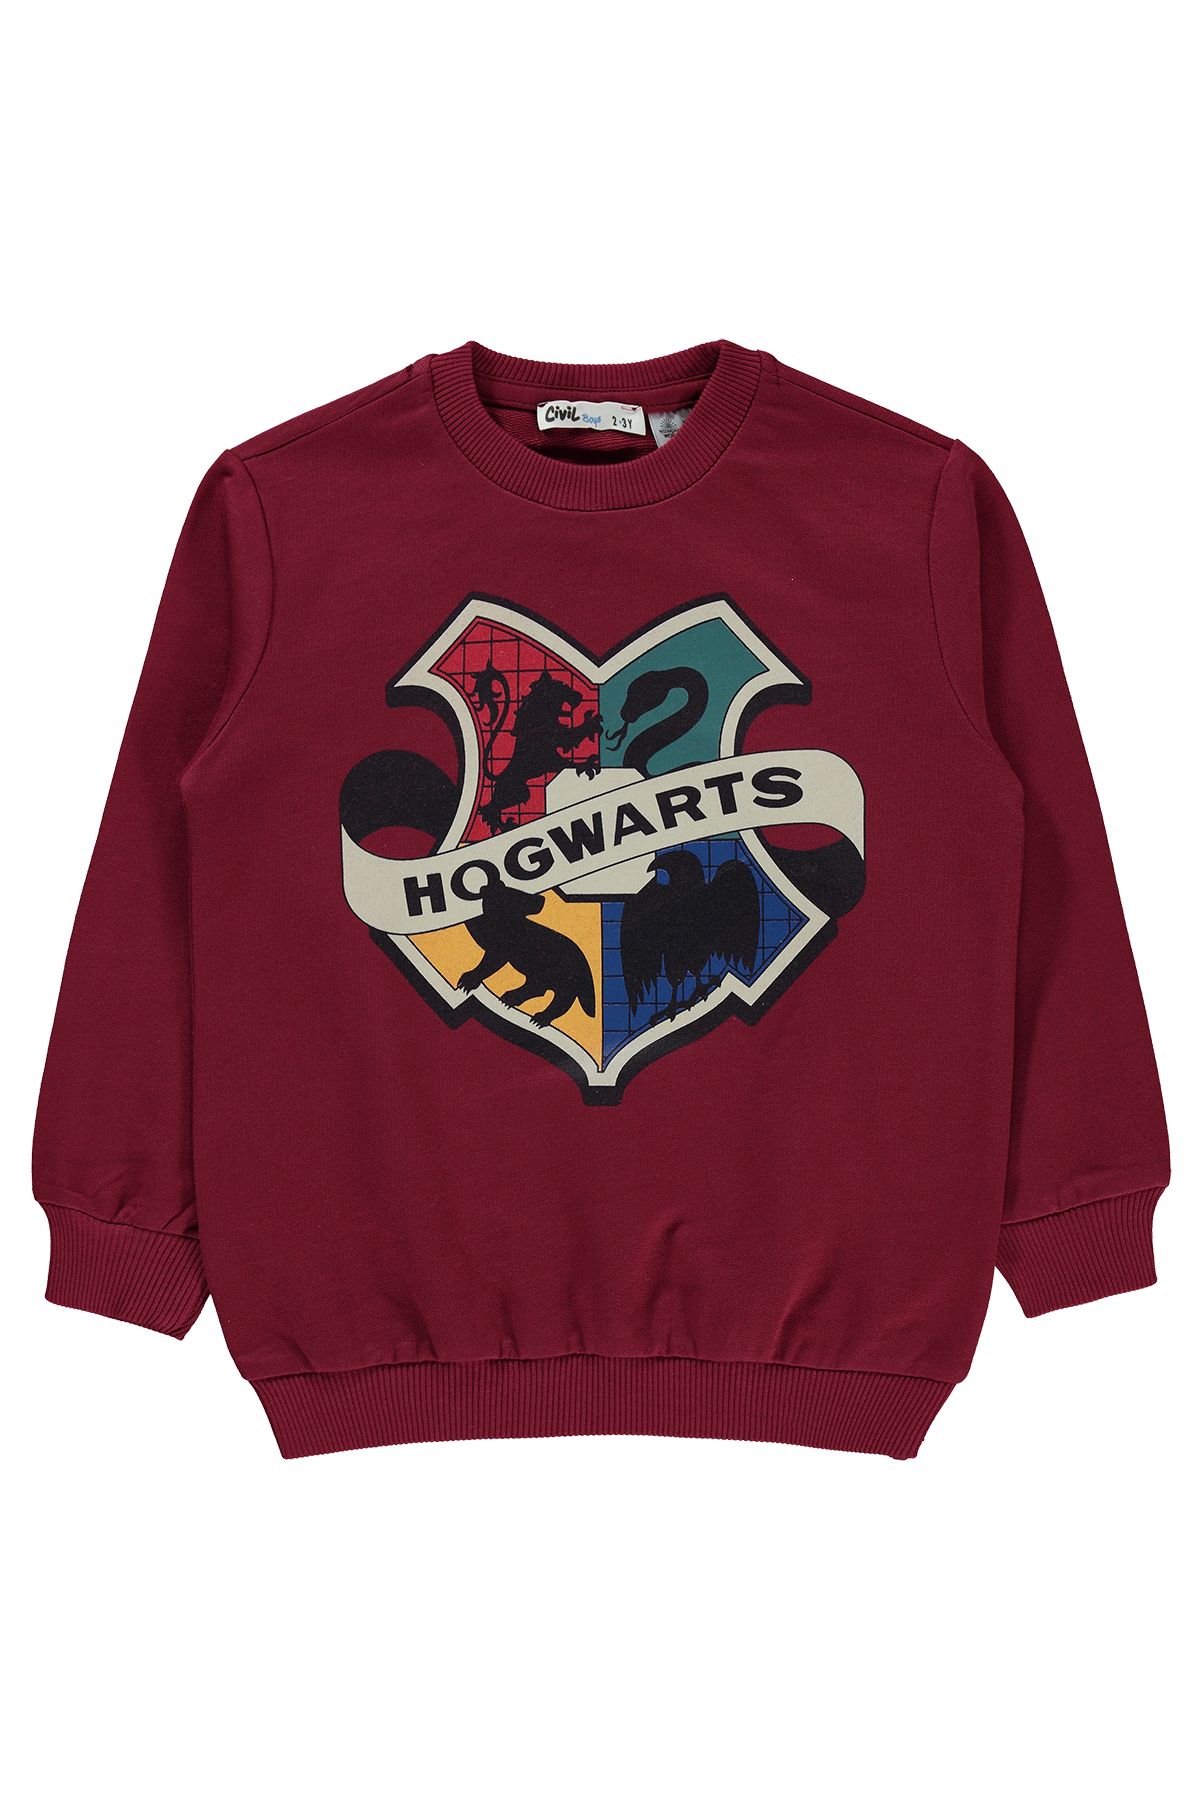 Harry Potter Erkek Çocuk Sweatshirt 2-5 Yaş Bordo